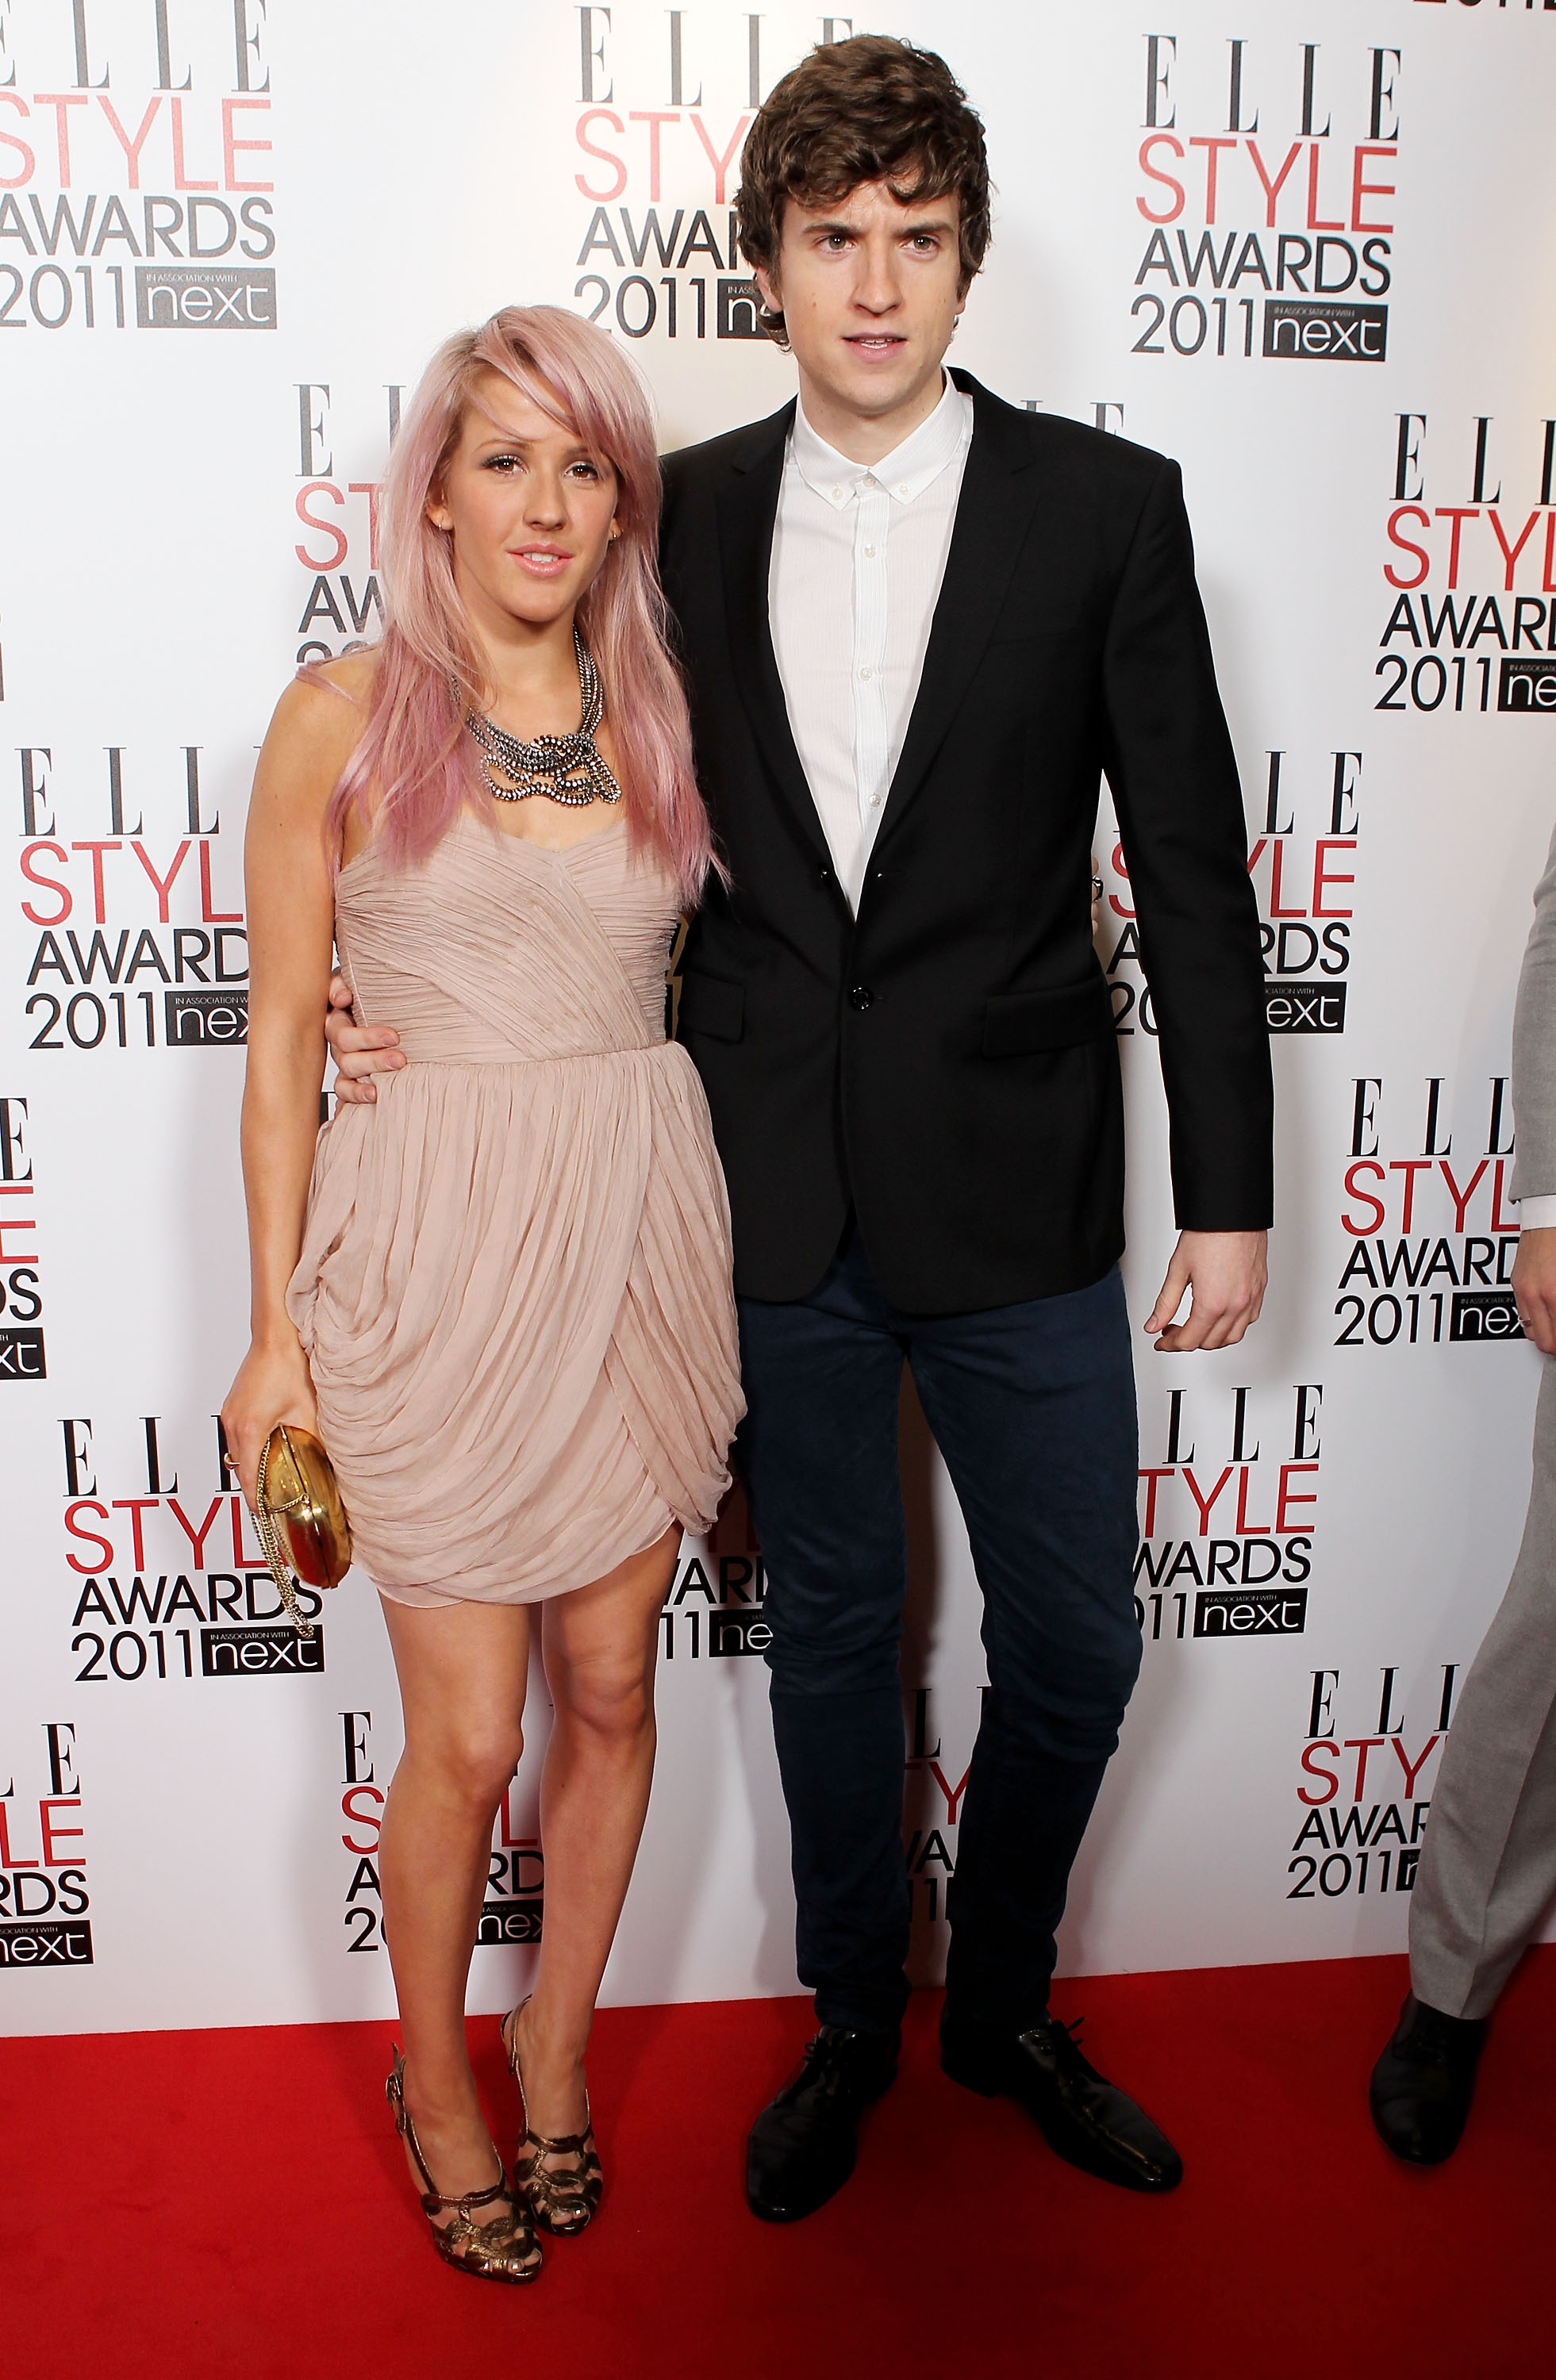 Ellie conoció al guapo DJ poco después de realizar su álbum debut Lights en 2010.